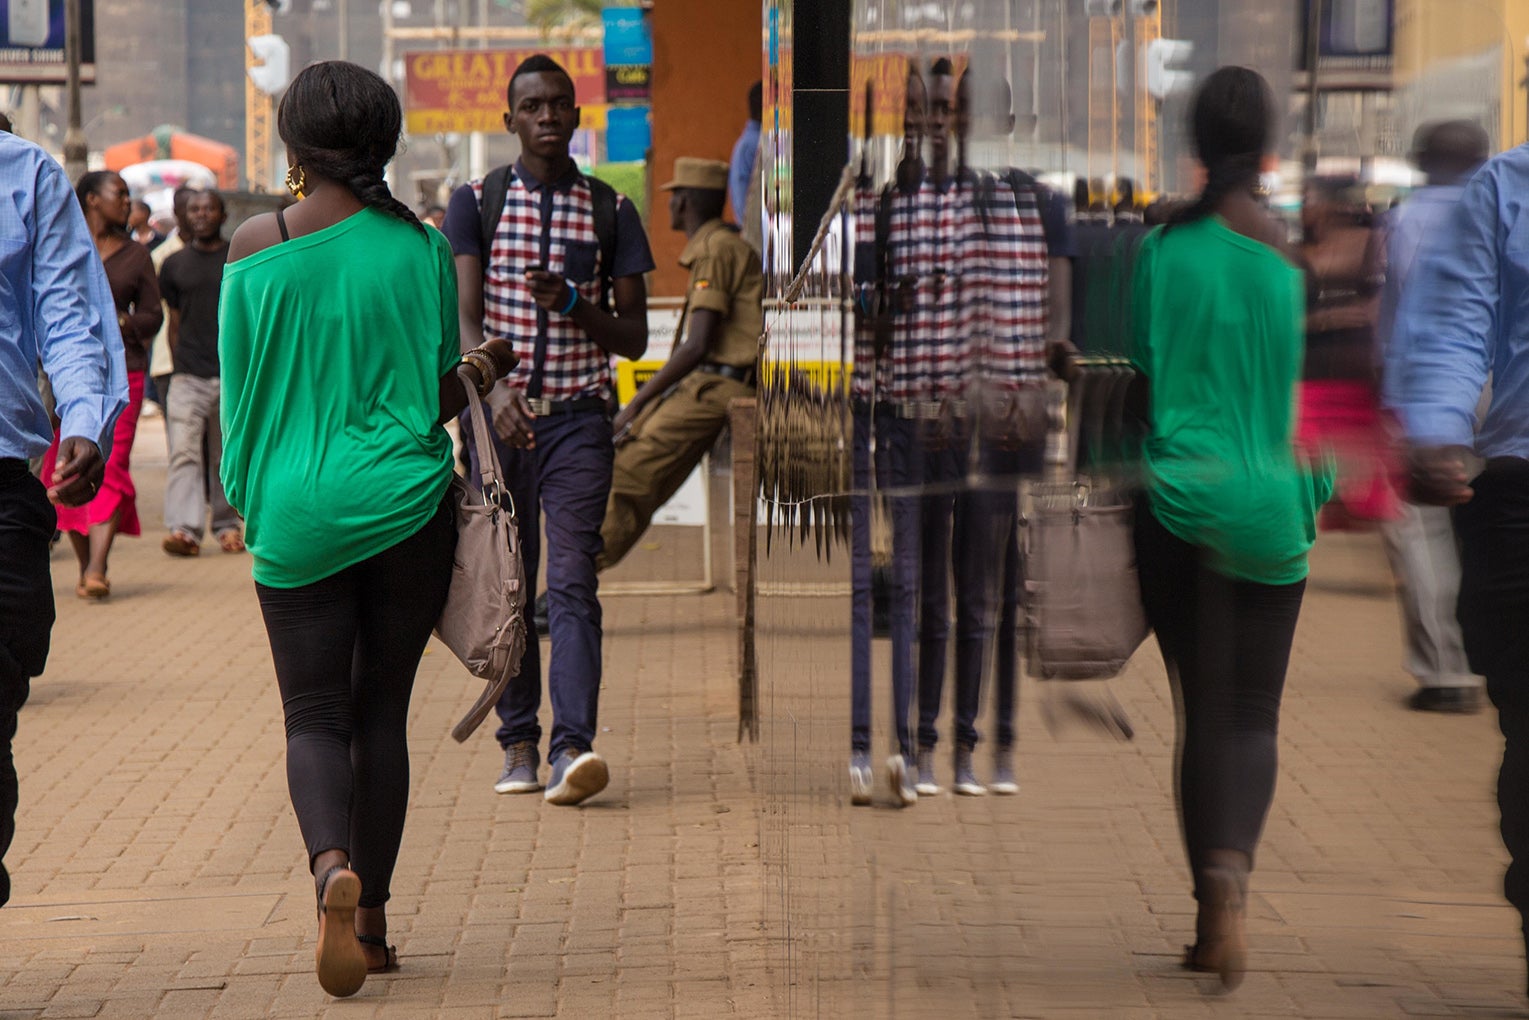 A crowded sidewalk in Uganda